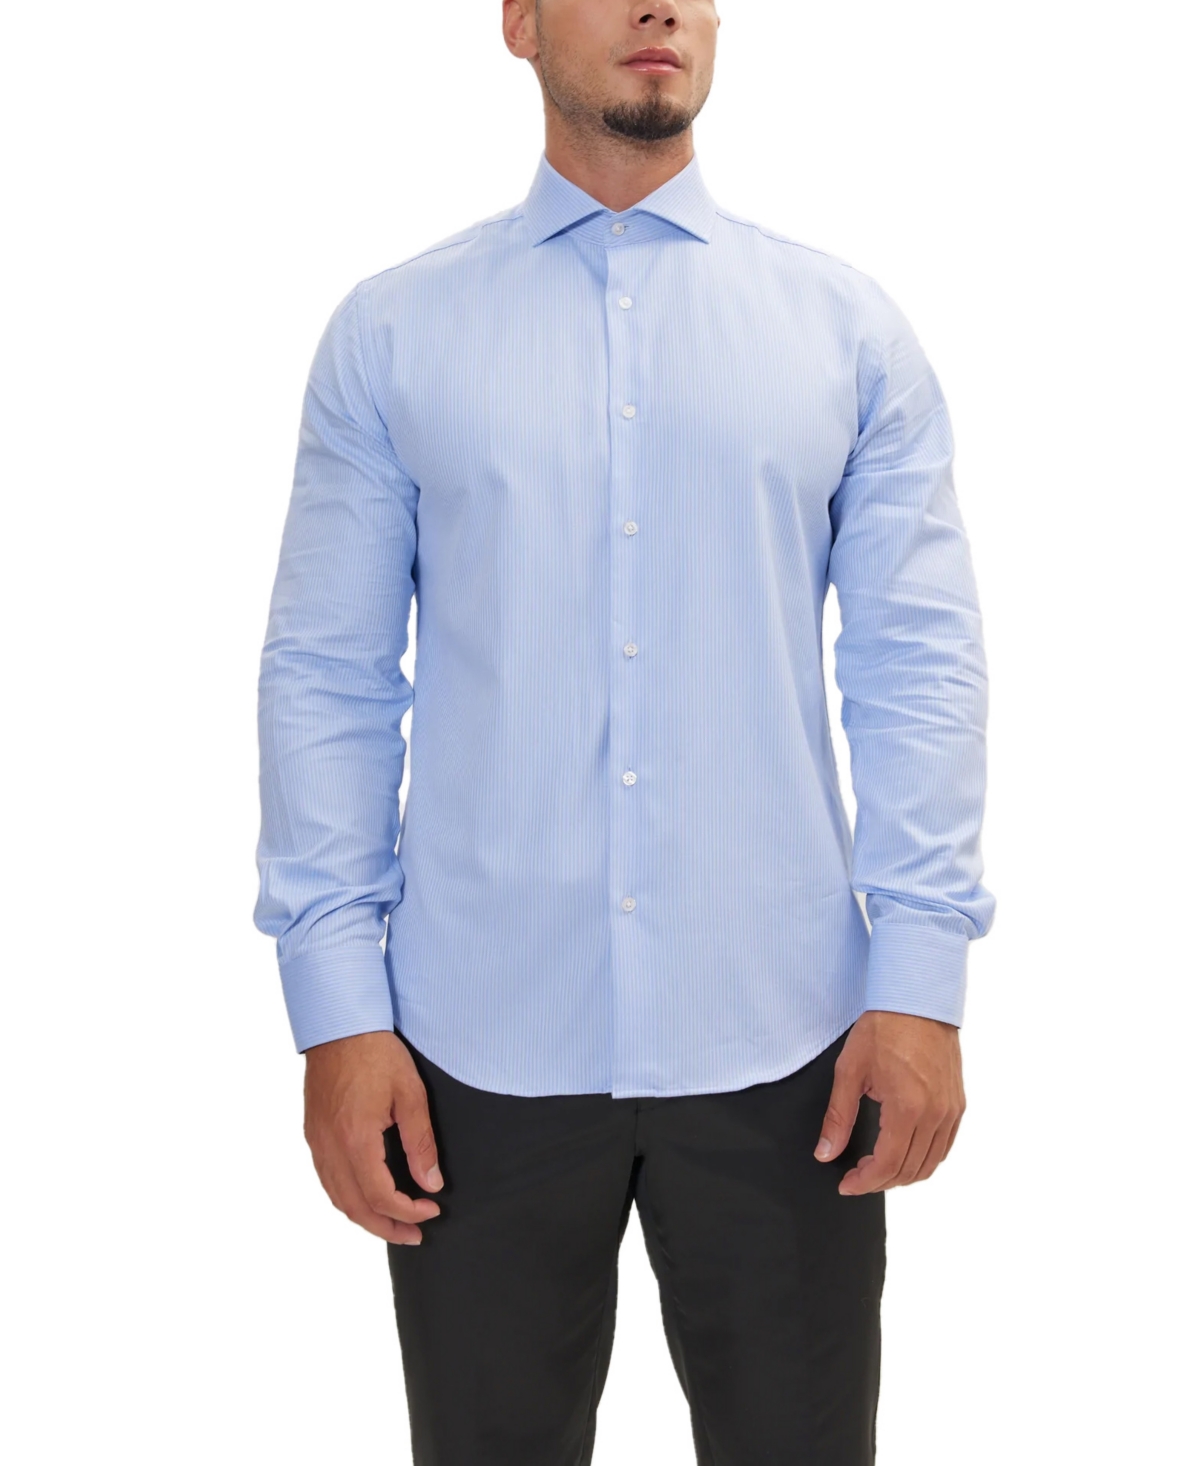 Men's Modern Spread Collar Fitted Shirt - Dark Blue Chevron